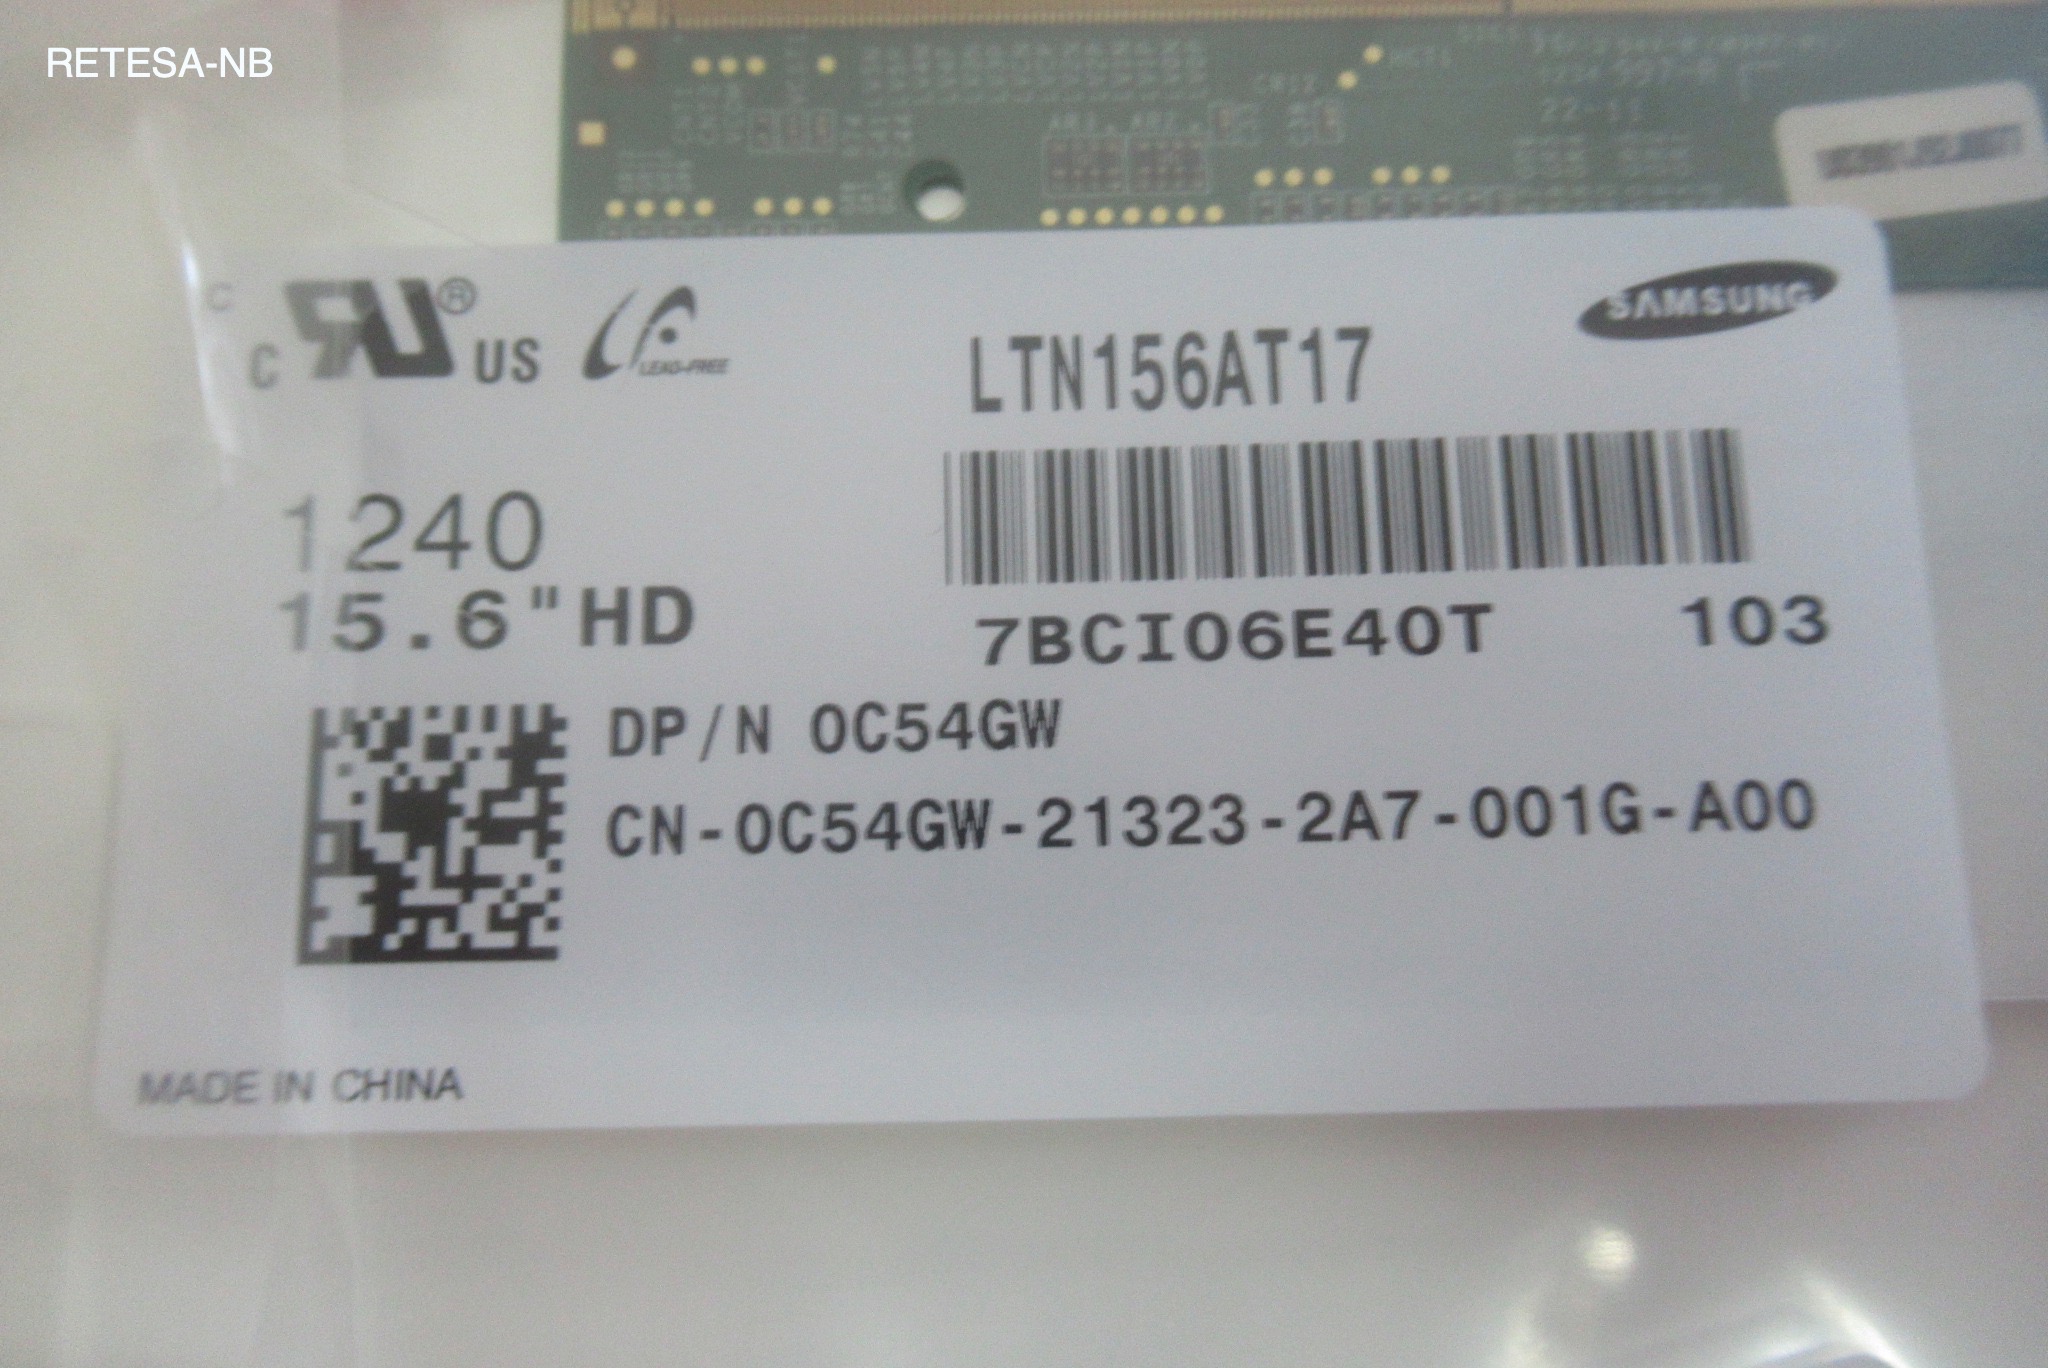 FTS Lifebook E781 Ersatzdisplay - Samsung LTN156AT17